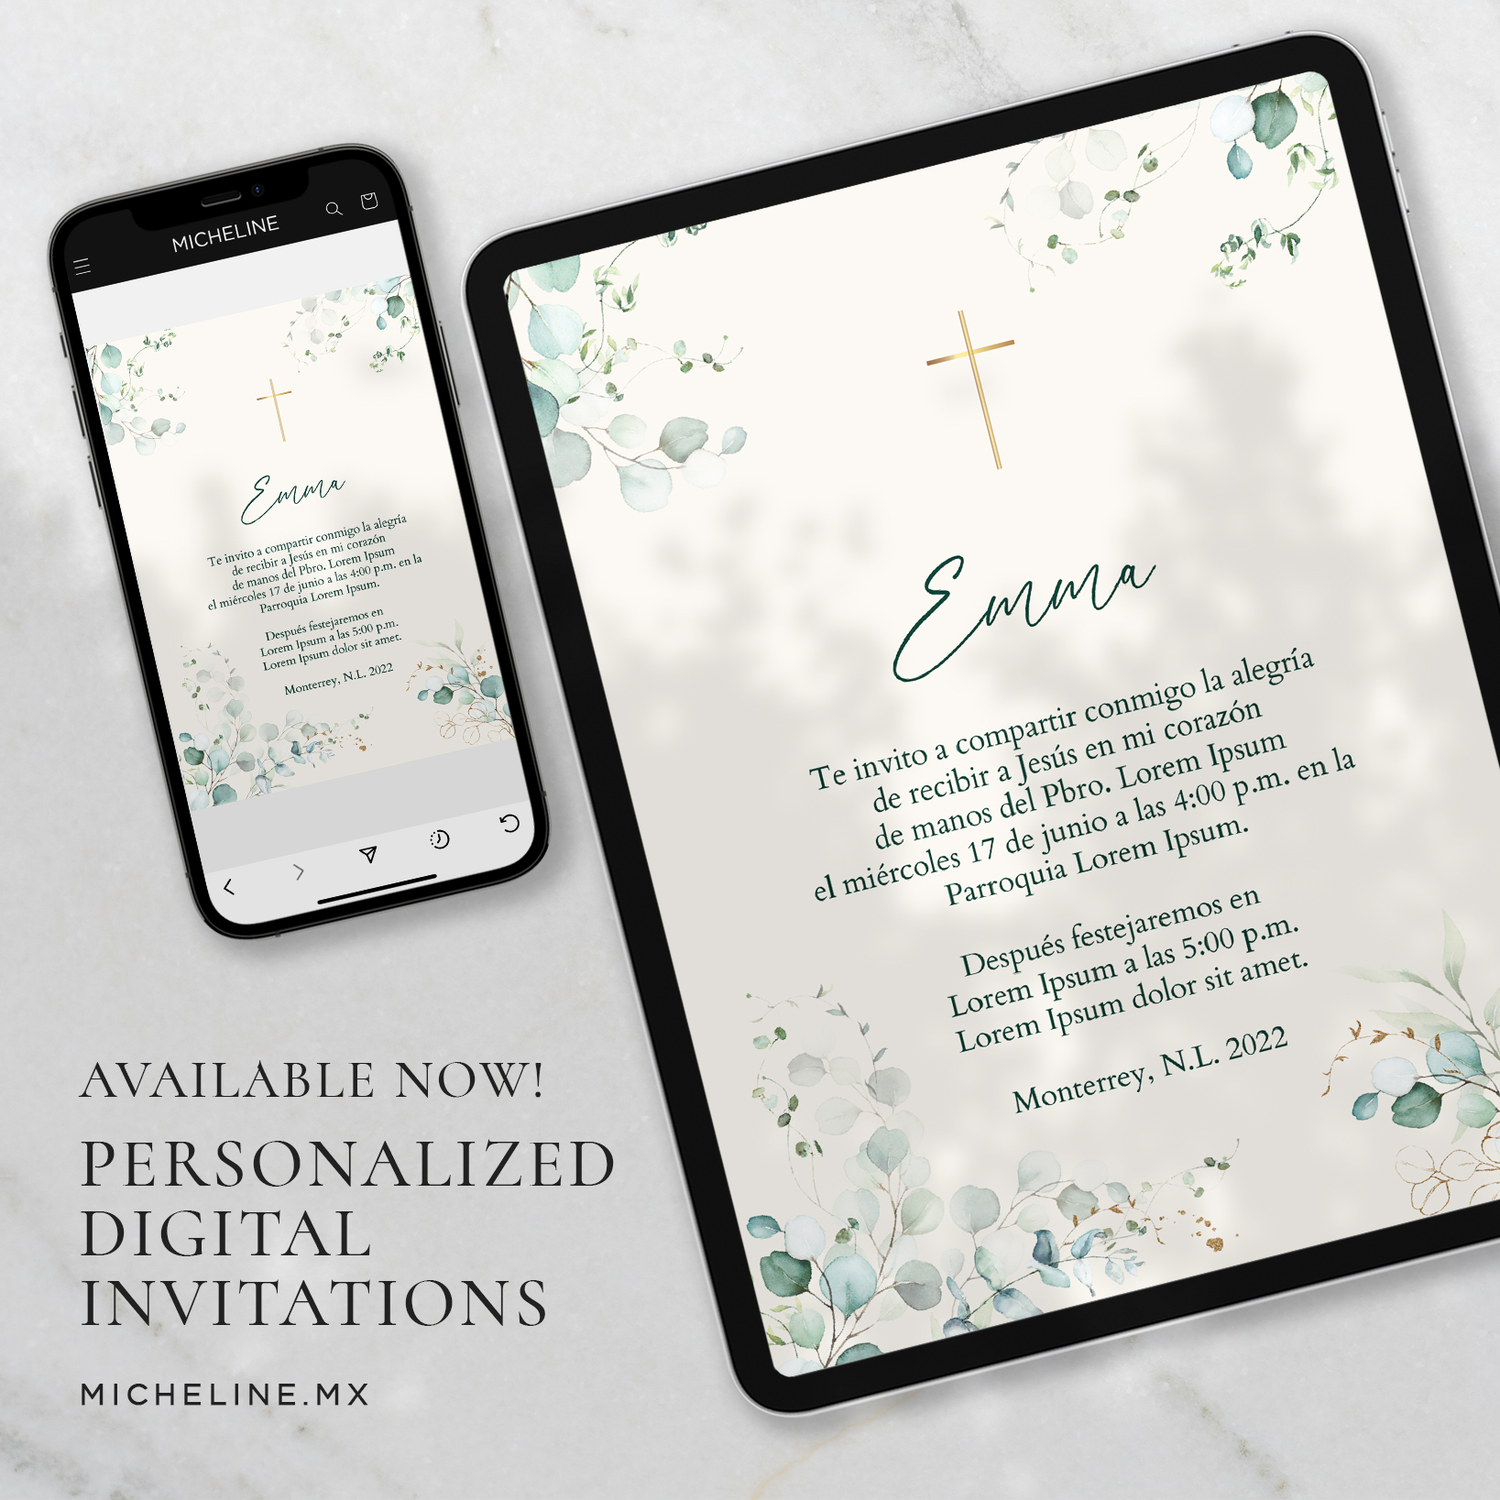 Invitaciones Digitales para Eventos